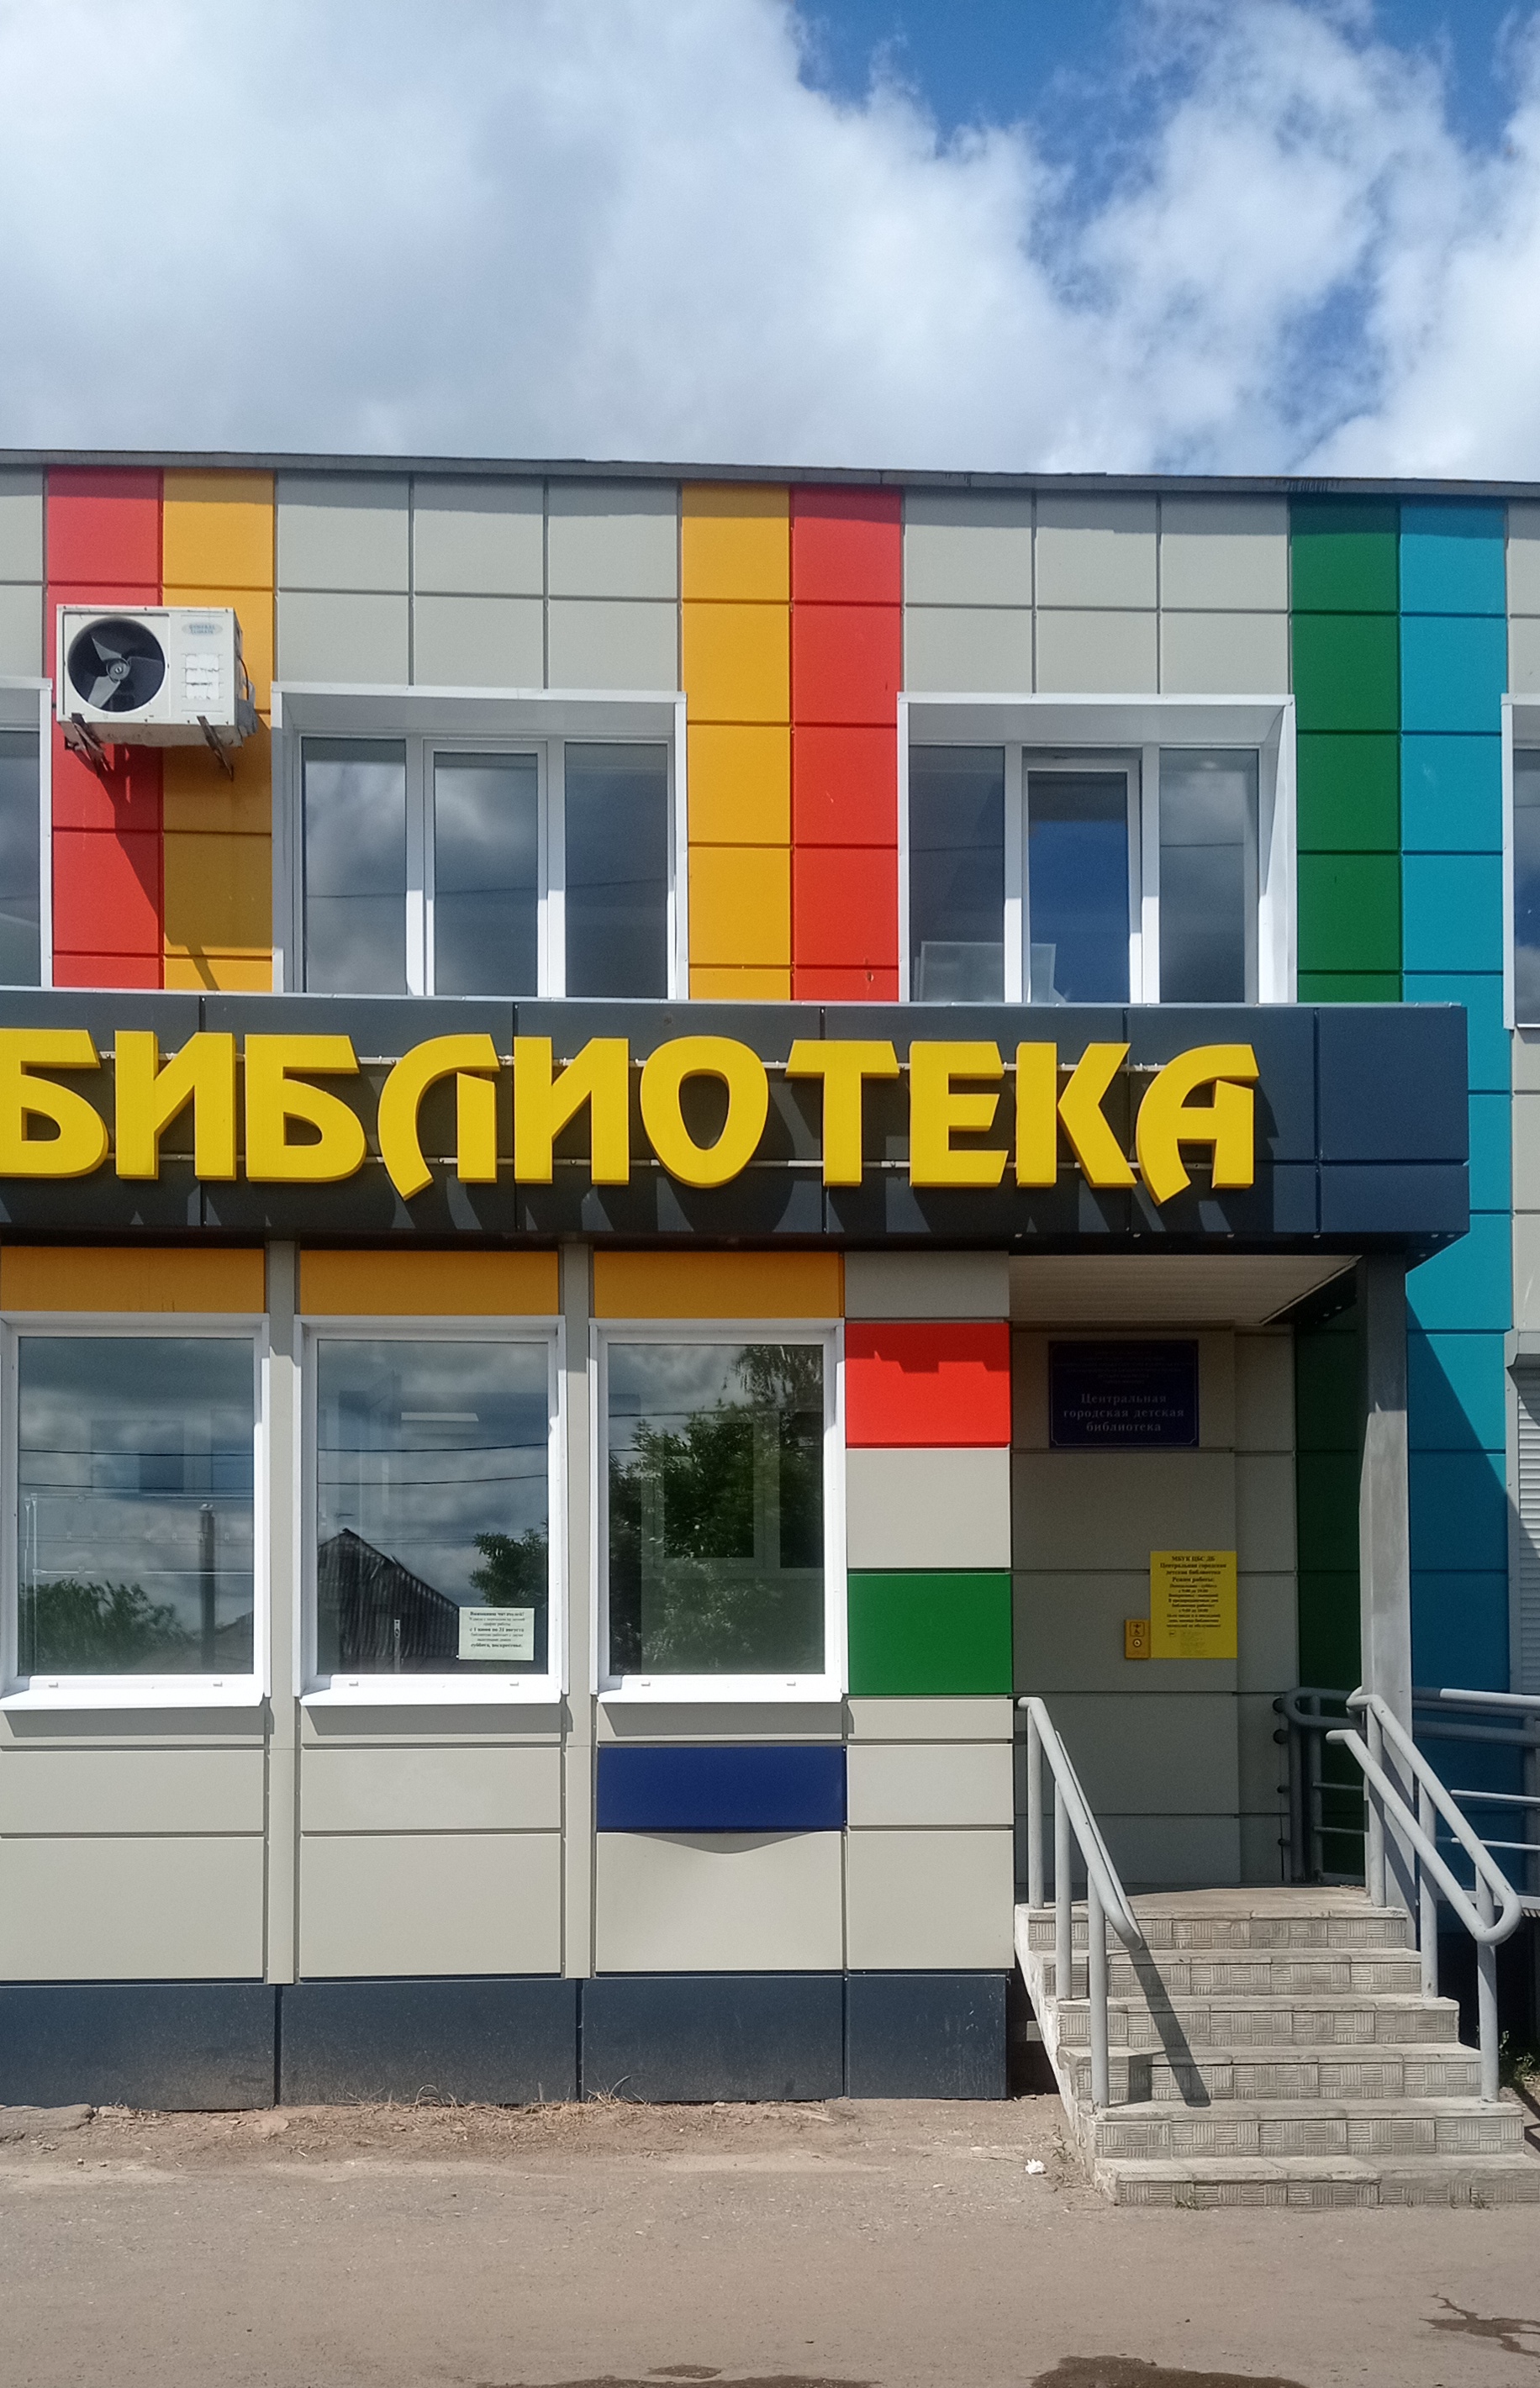 Городская детская библиотека ул. Шубиных, Иваново.